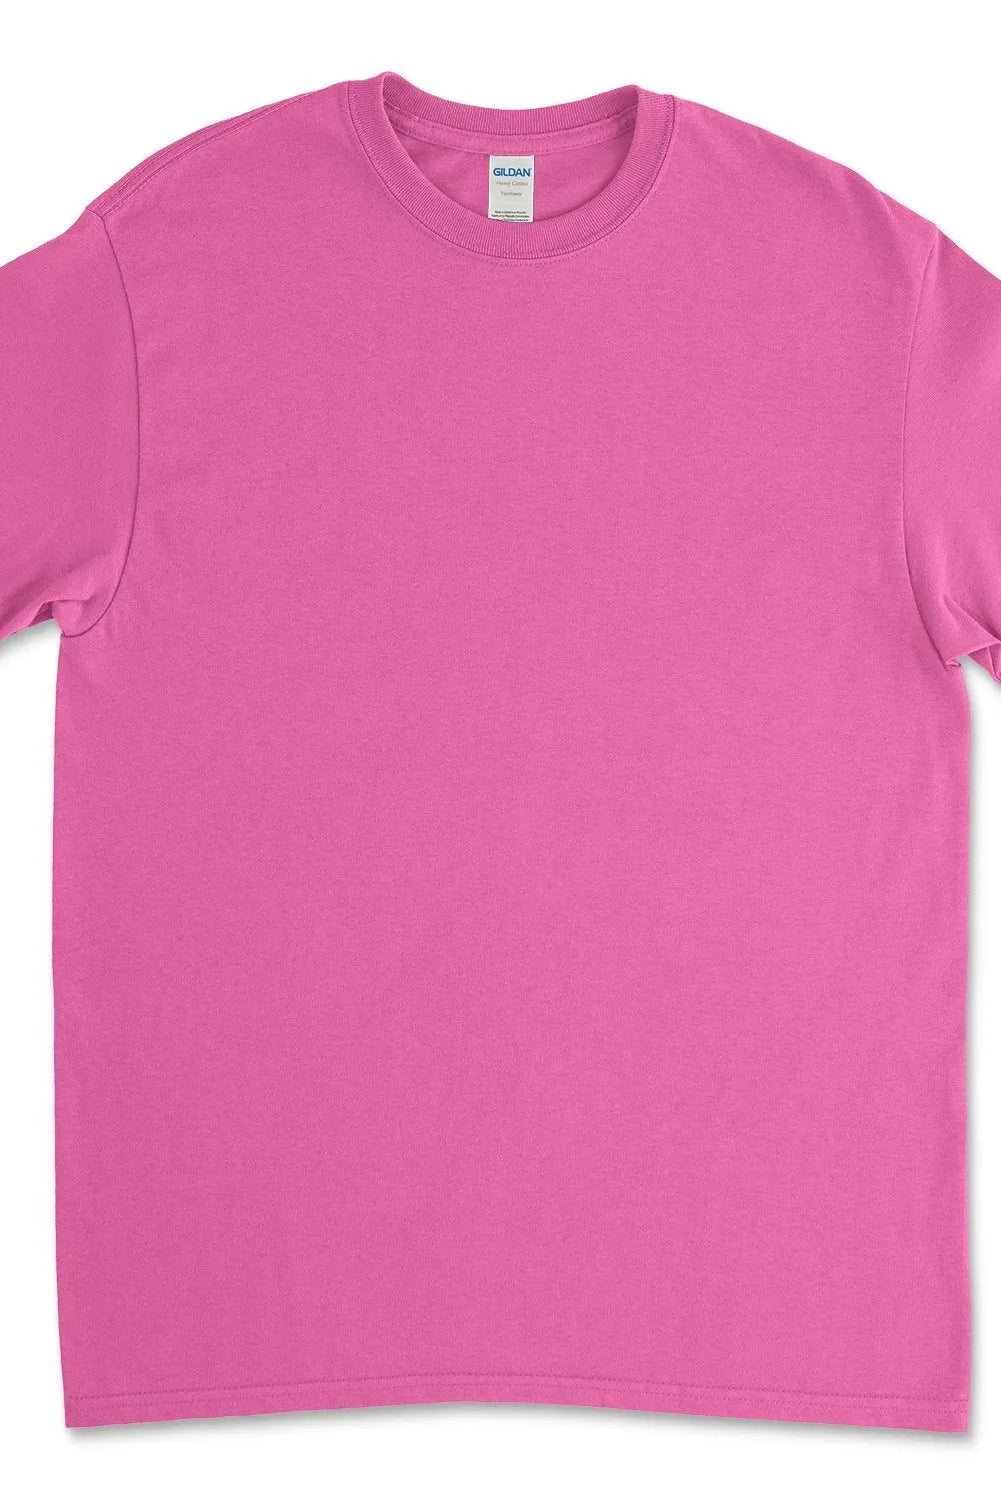 Heavy Cotton™ T-Shirt - 5000 - Print Me Shirts